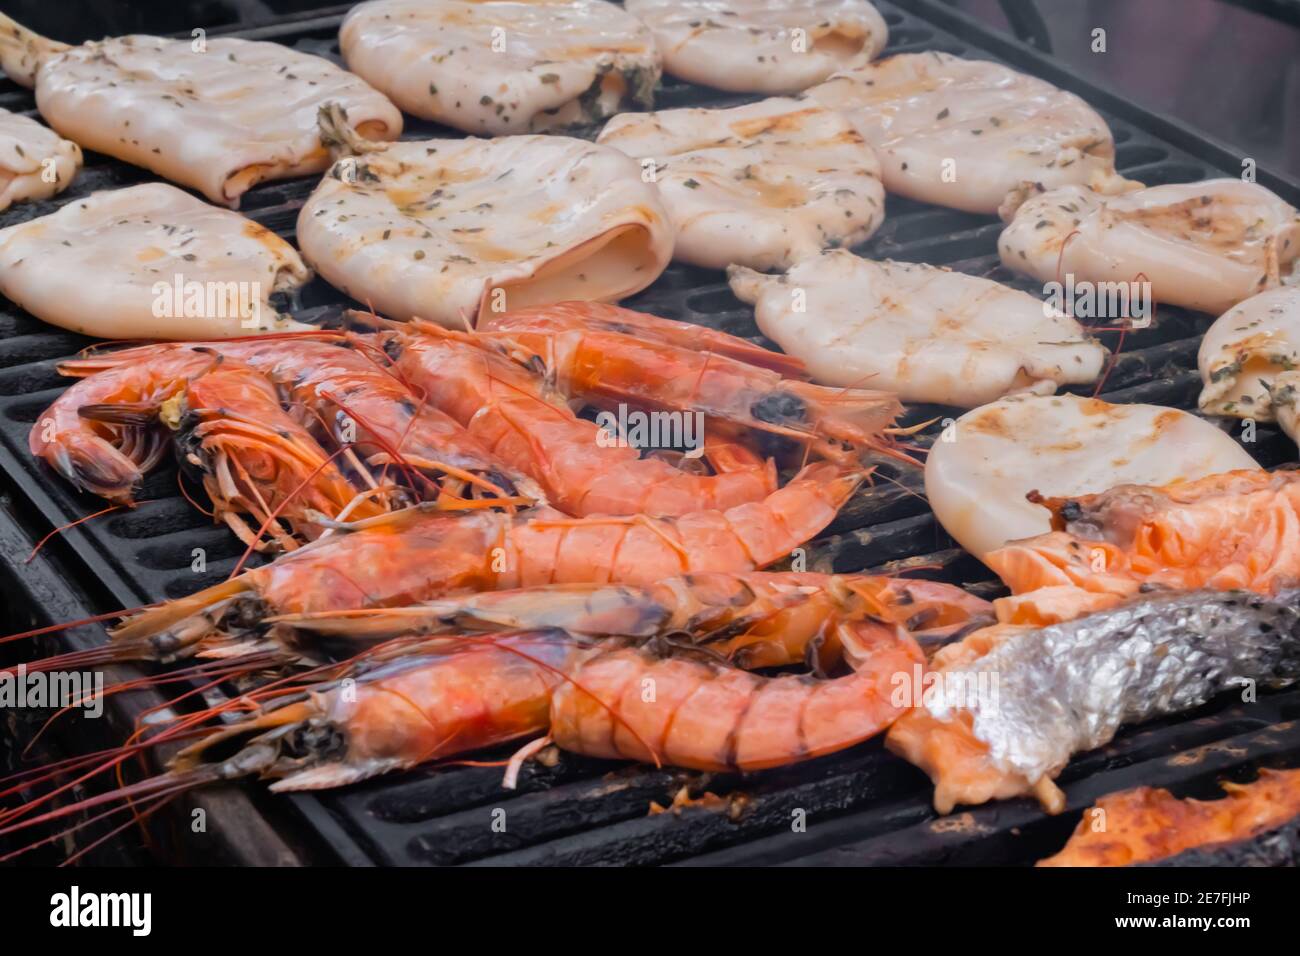 Prozess der Zubereitung von roten Kaisergranat-Garnelen, Tintenfischen,  Lachssteaks auf dem Grill Stockfotografie - Alamy